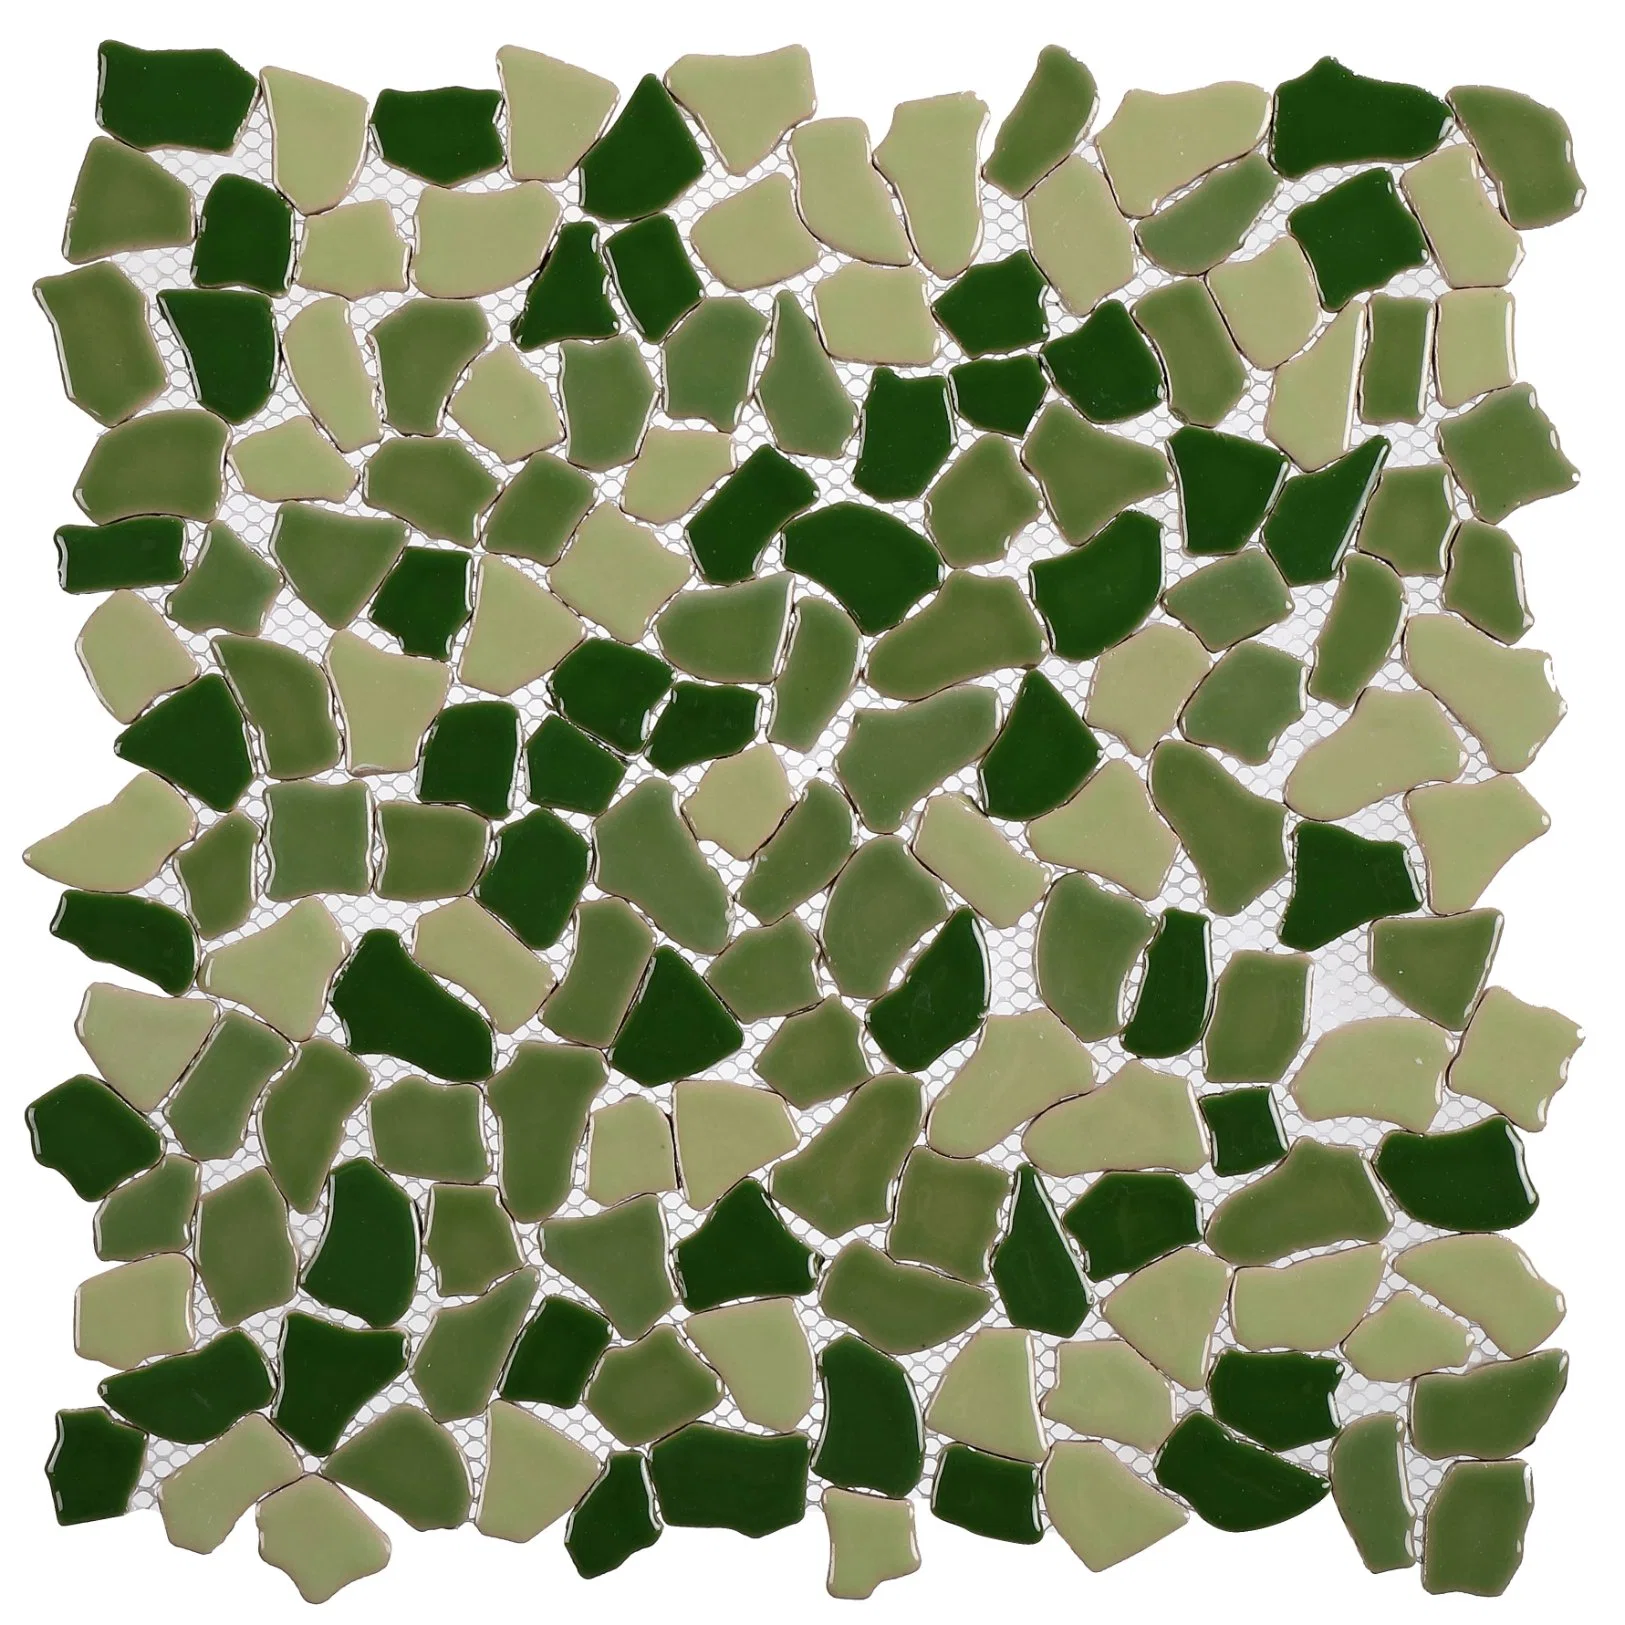 Azulejo verde Decoracion el panel de pared cerámica mosaico de piedras irregulares